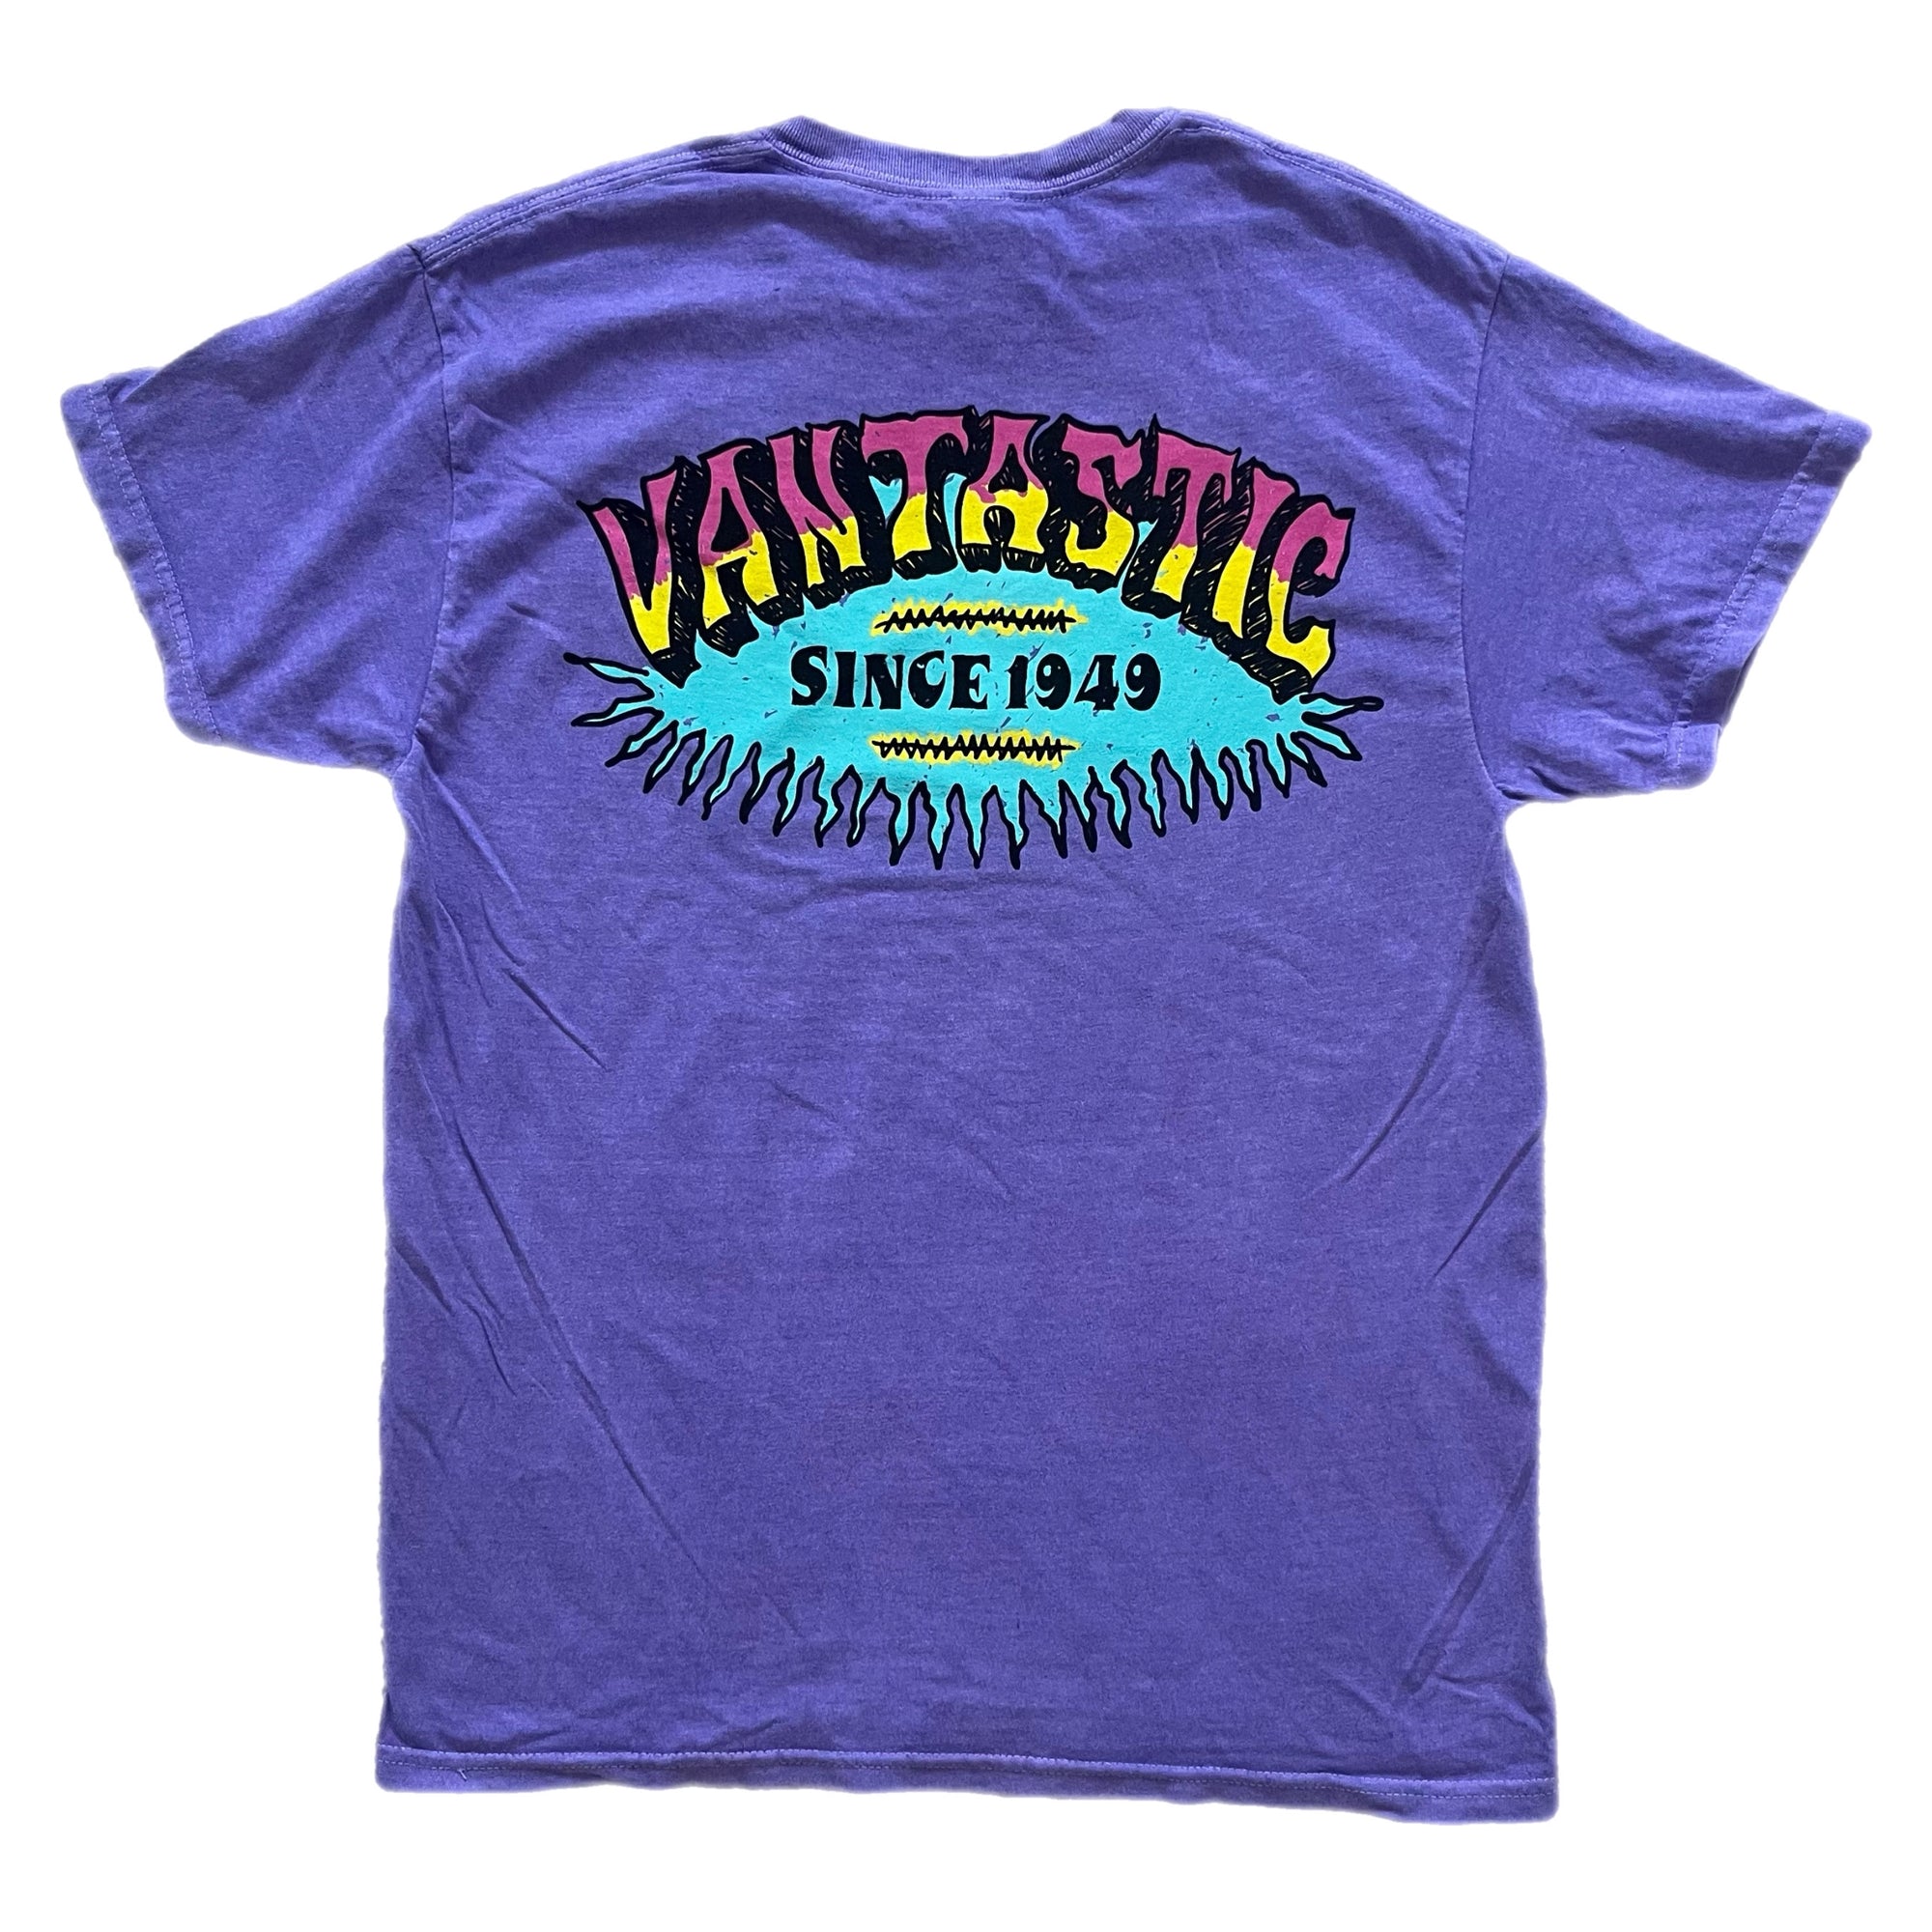 Vintage Surf T-shirt - Washed Violet